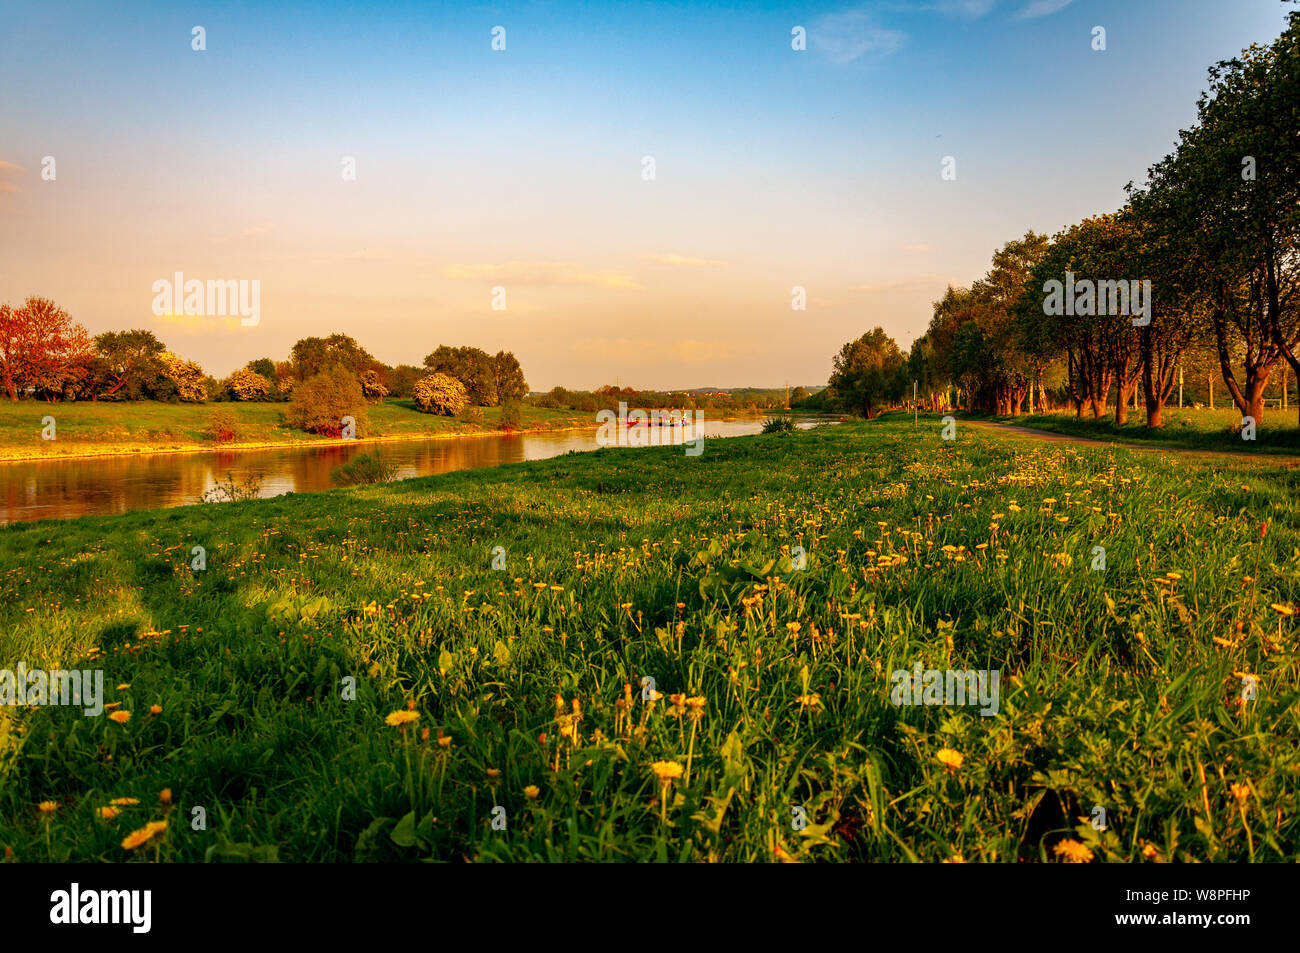 Beau paysage de la rivière était déjà assez dans la ville de Bad Oeynhausen, Allemagne Banque D'Images